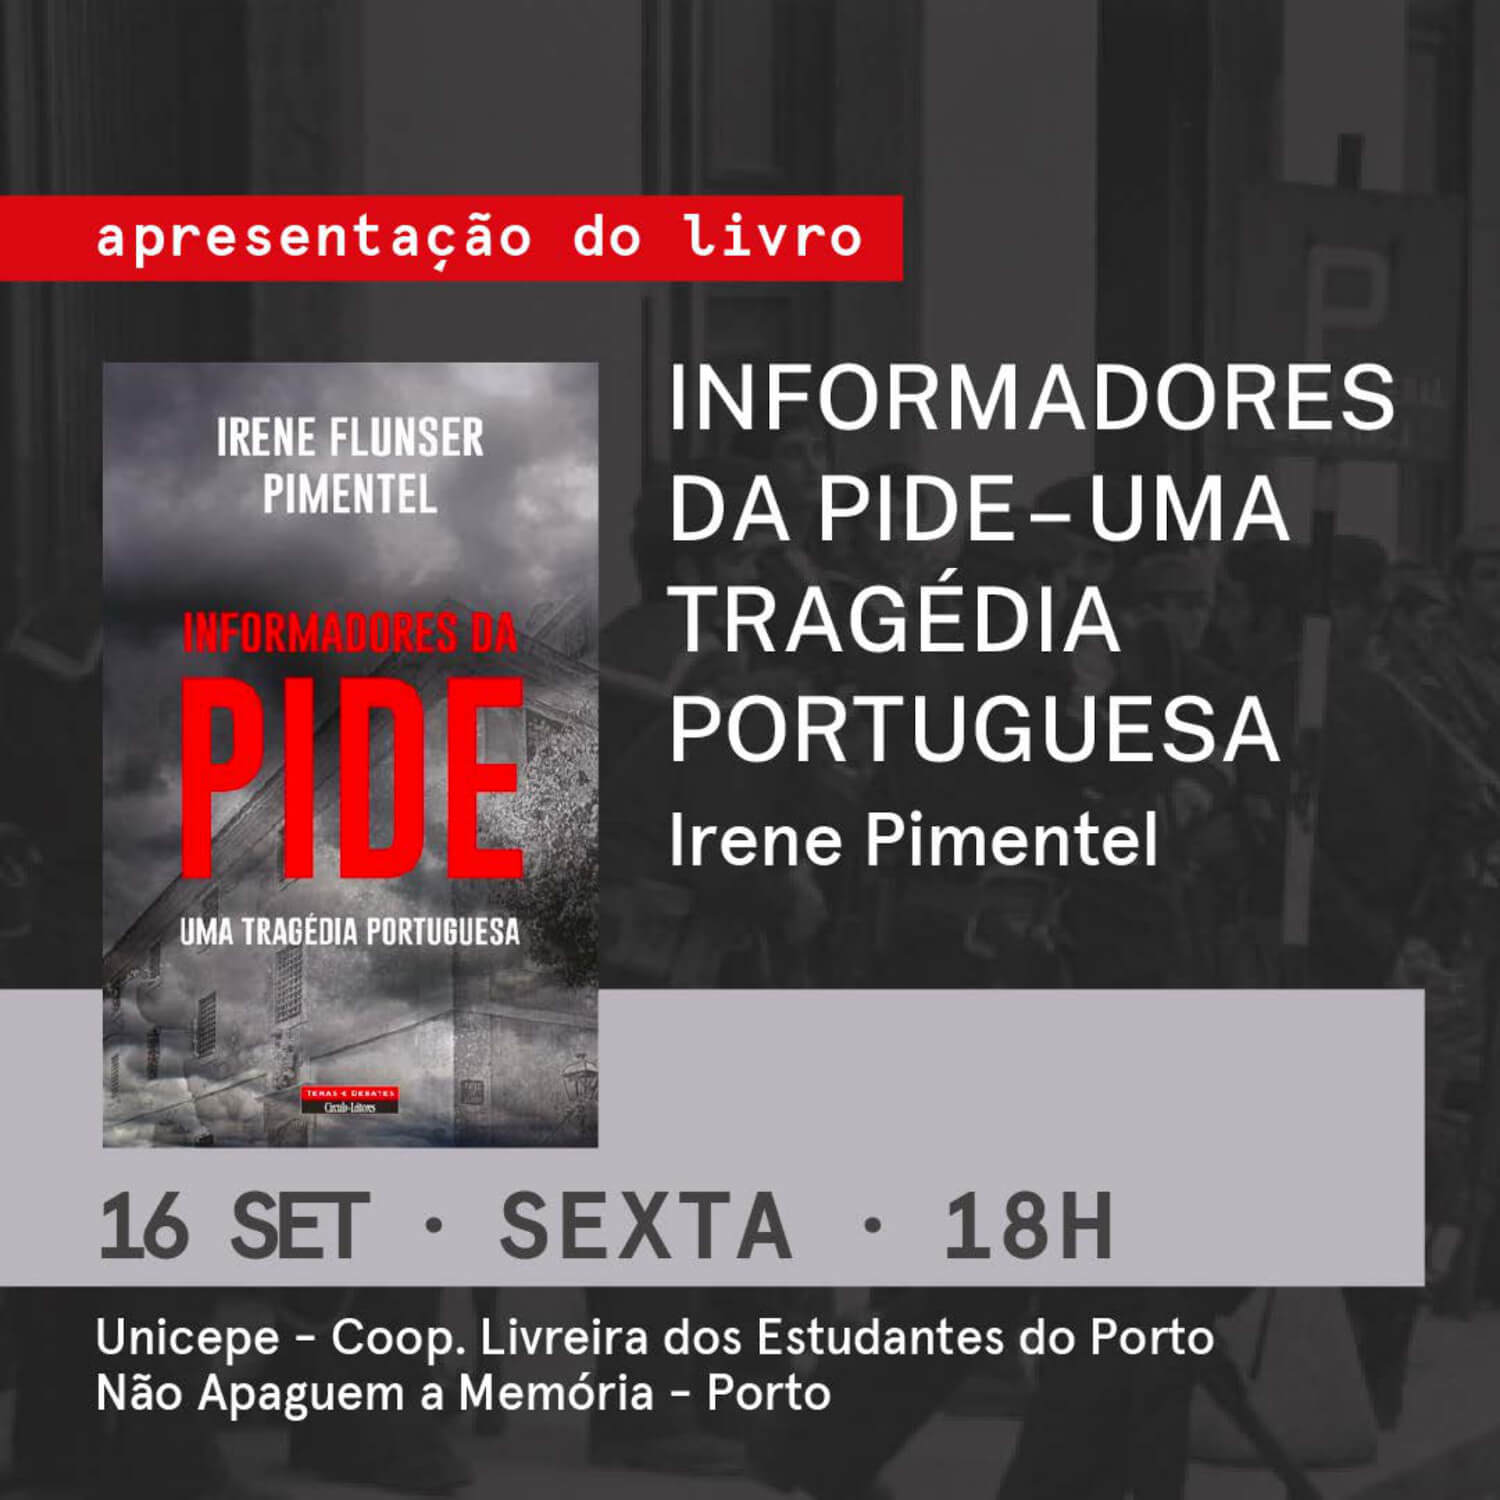 Cartaz da apresentação do livro "Informadores da PIDE: Uma Tragédia Portuguesa", de Irene Flunser Pimentel, no Porto. 16 de Setembro de 2021, às 18 horas na Unicepe